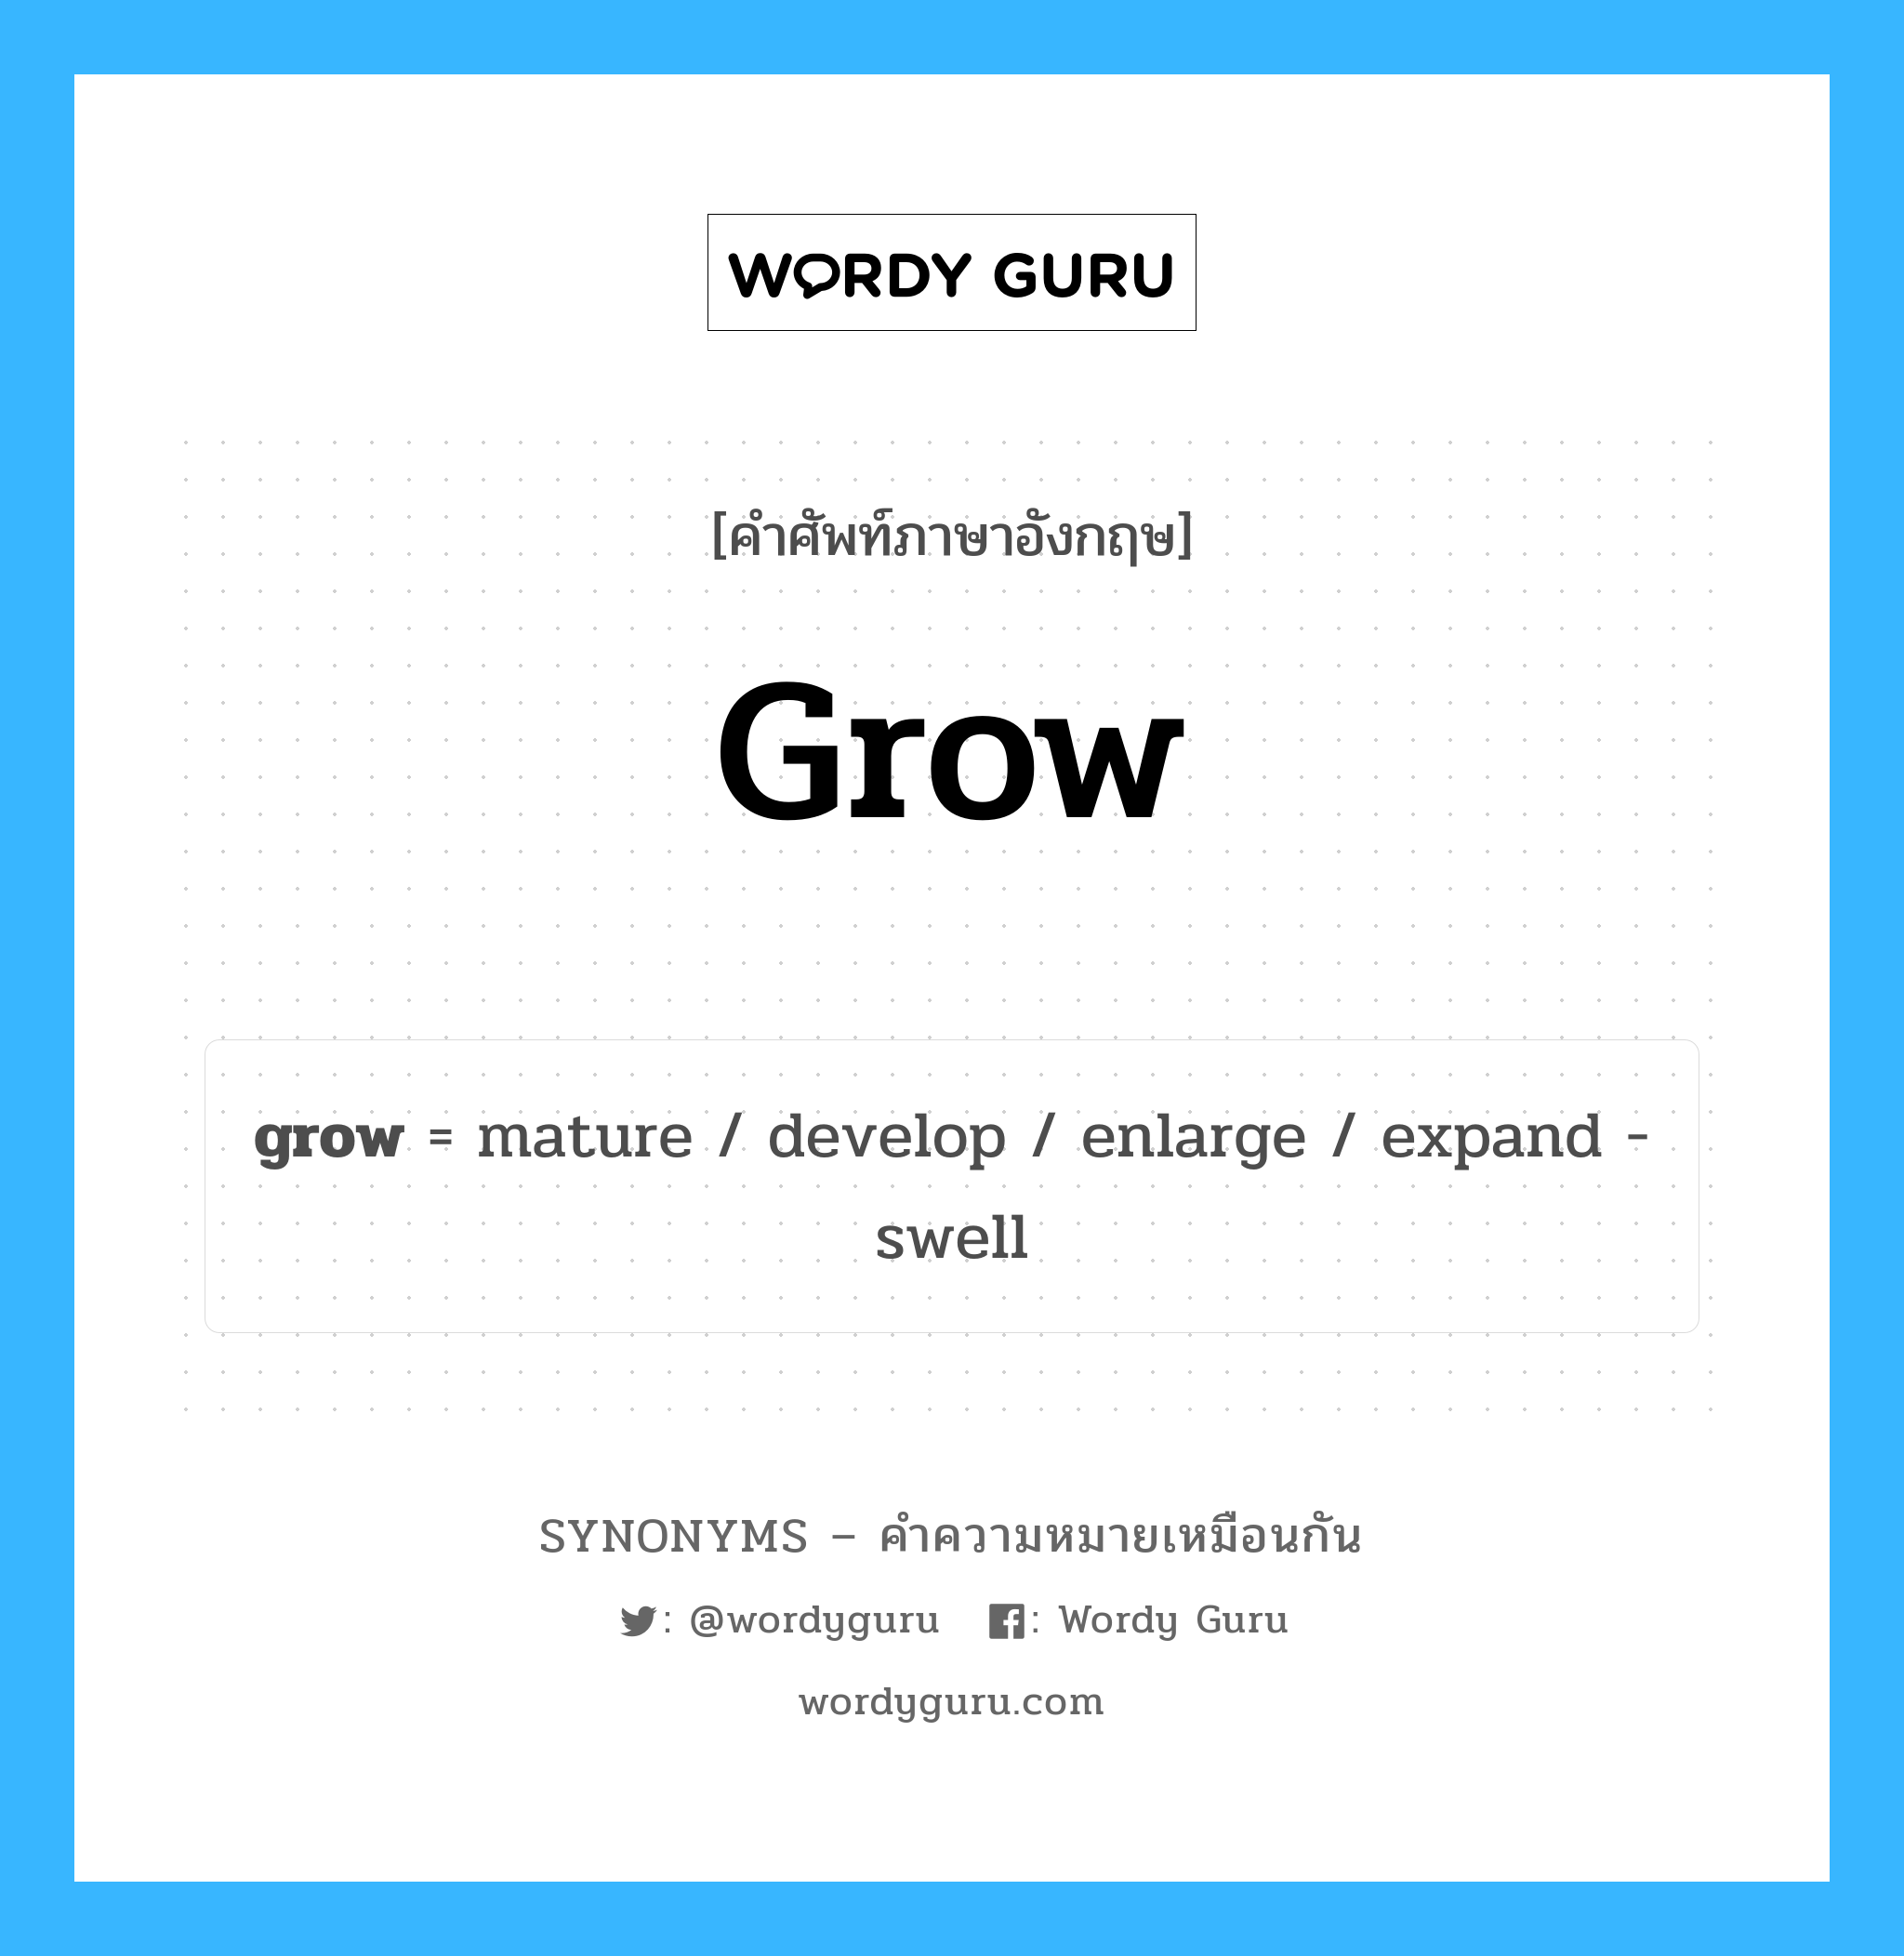 expand -swell เป็นหนึ่งใน grow และมีคำอื่น ๆ อีกดังนี้, คำศัพท์ภาษาอังกฤษ expand -swell ความหมายคล้ายกันกับ grow แปลว่า ขยาย - บวม หมวด grow